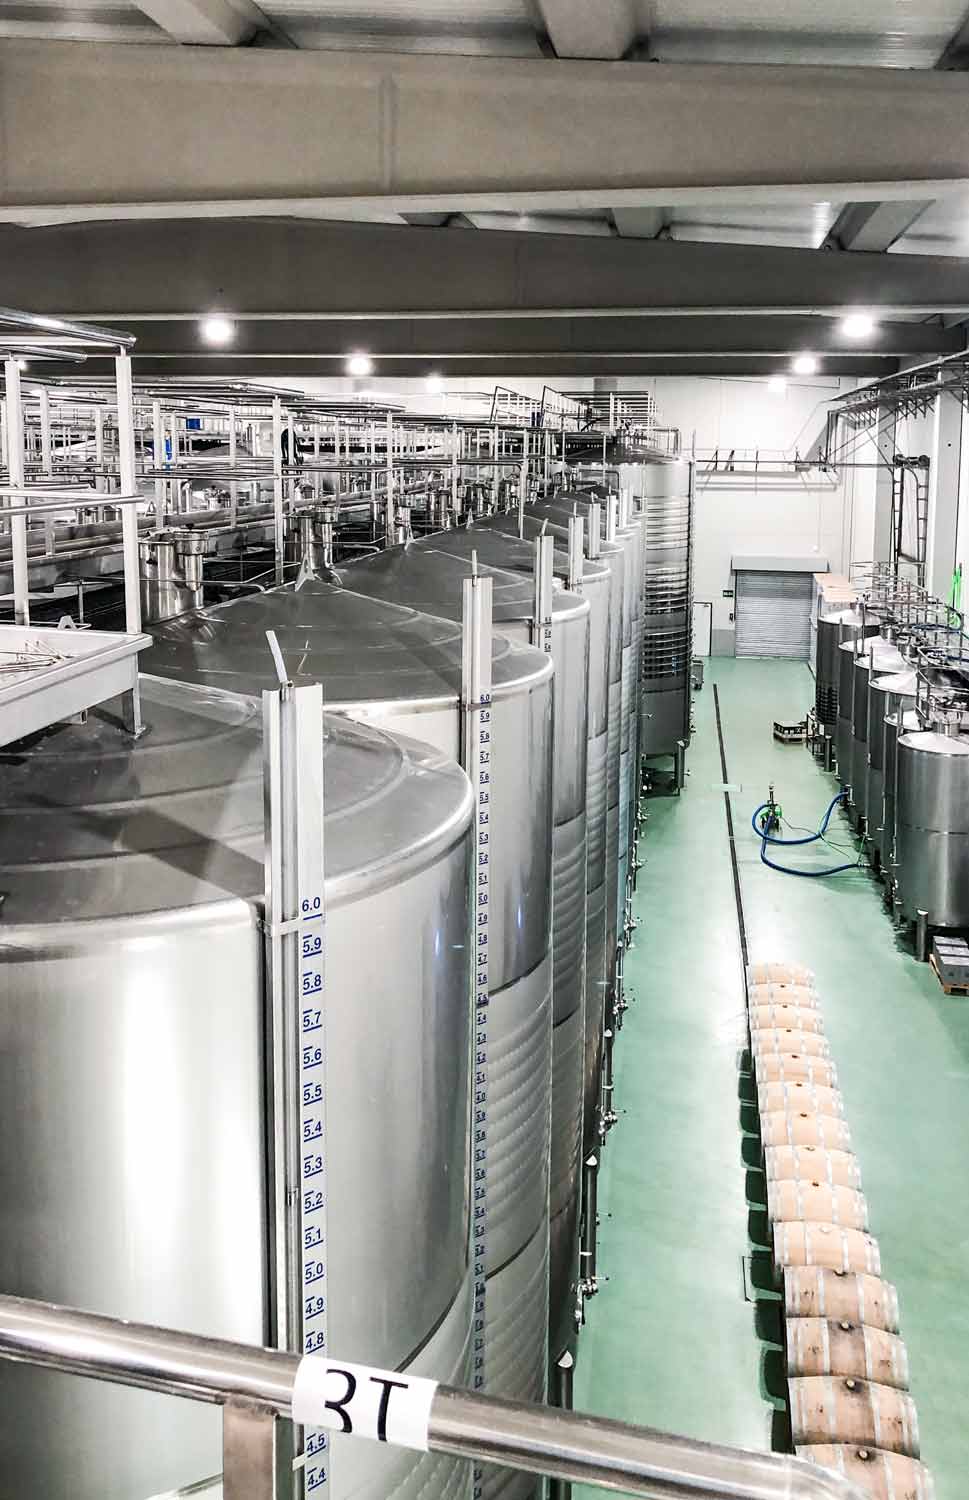 Trotz seiner jungen Geschichte, steht das Weingut Bodegas Diez Siglos seit seiner Gründung 2009 für Trauben unglaublicher Qualität. Einer der Gründe für die Zusammenarbeit mit Kolonne Null und den ersten gemeinsamen alkoholfreien Verdejo.